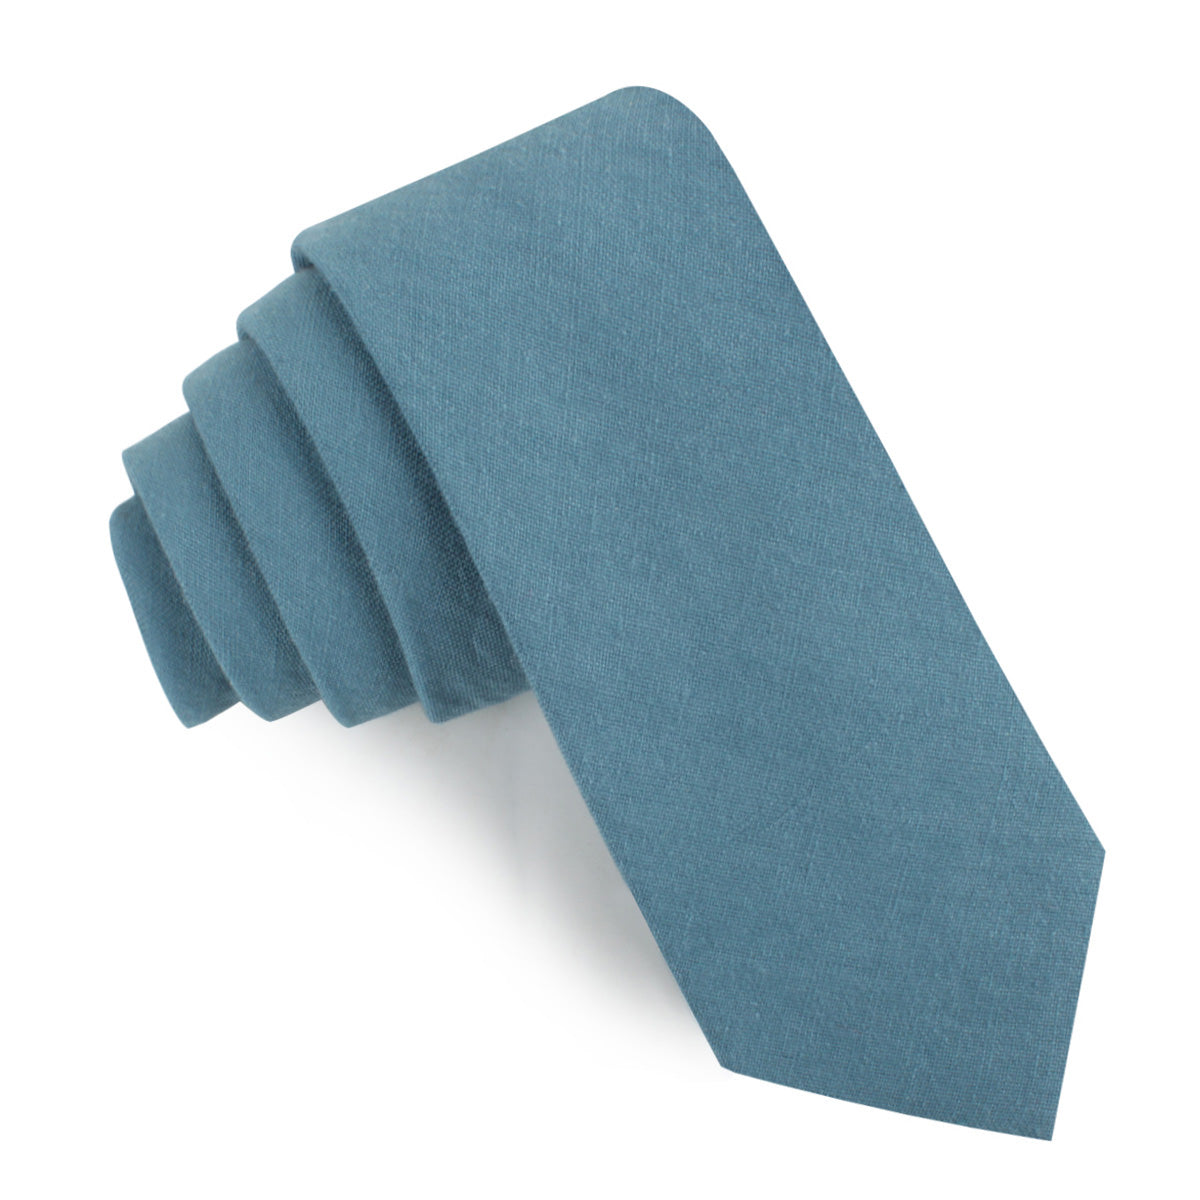 Dusty Teal Blue Linen Skinny Tie | Wedding Slim Ties AU